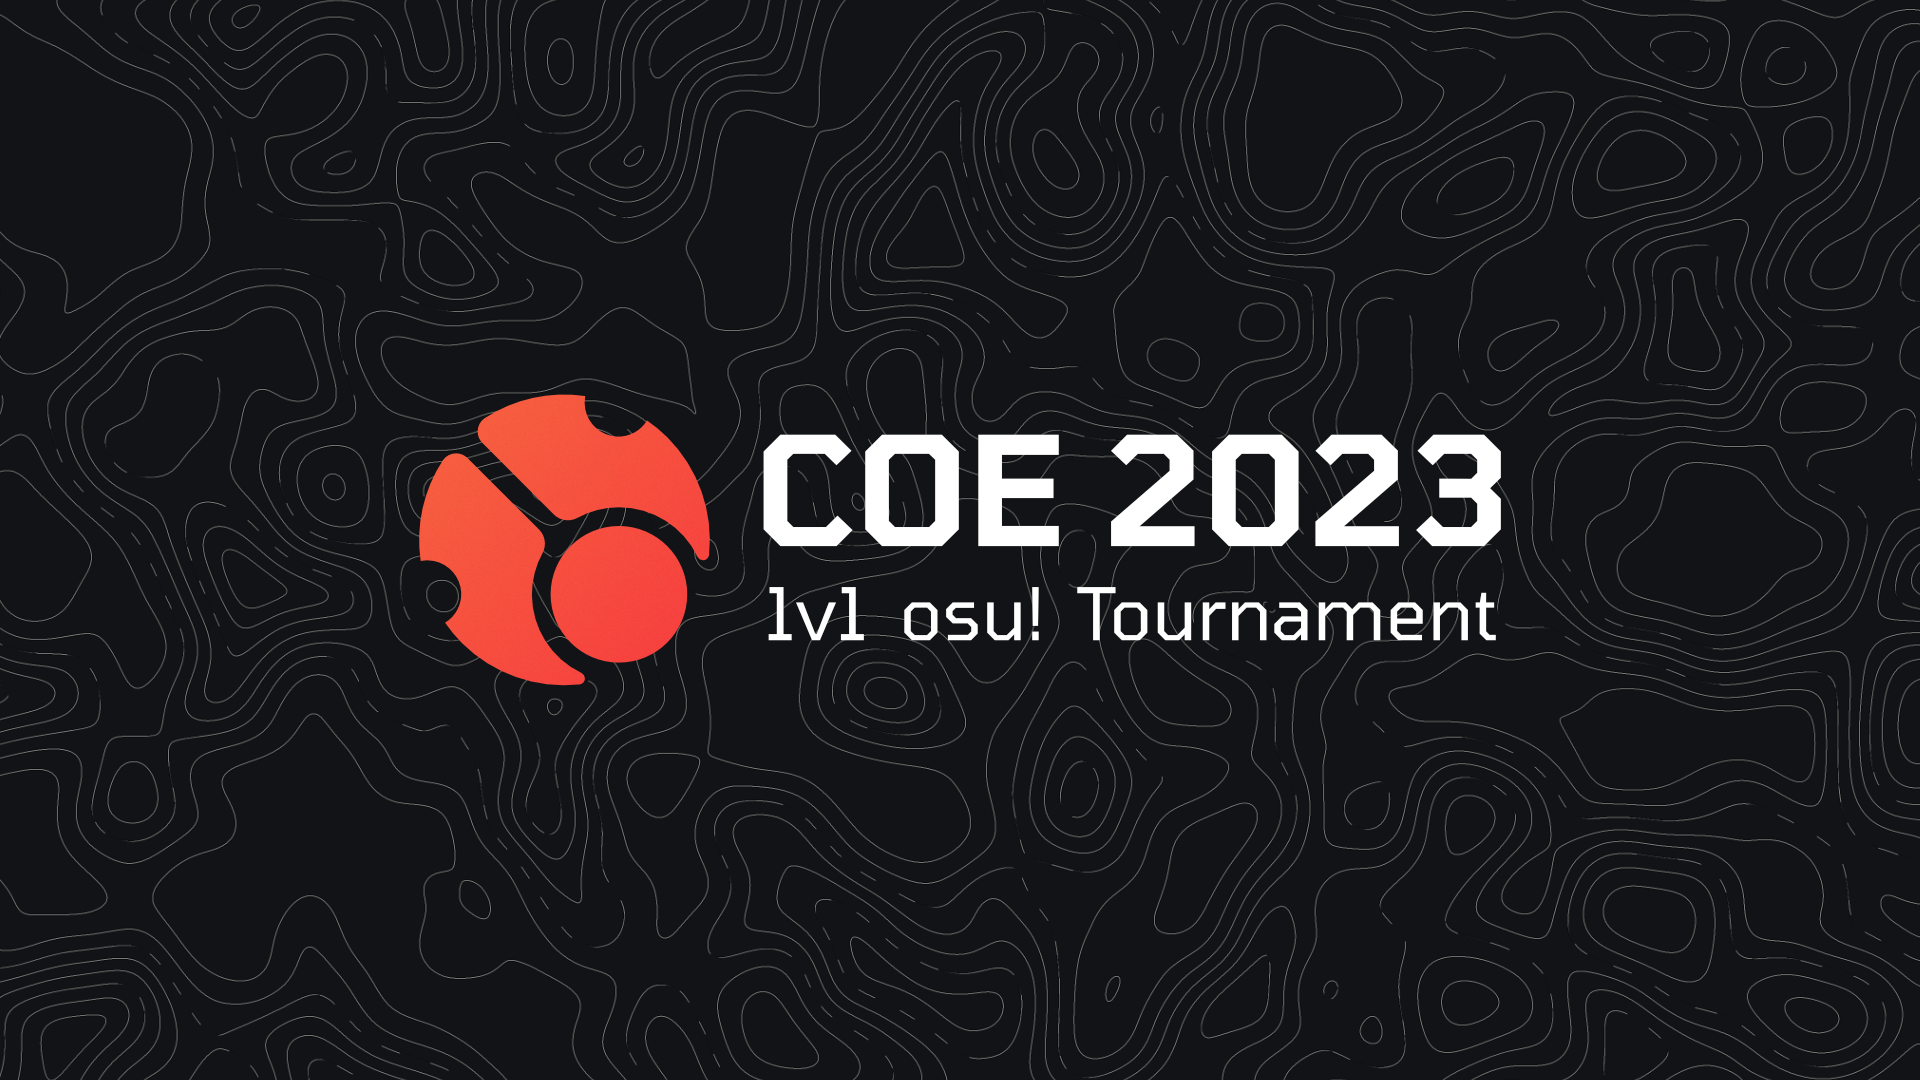 COE 2023 1v1 osu! Tournament banner